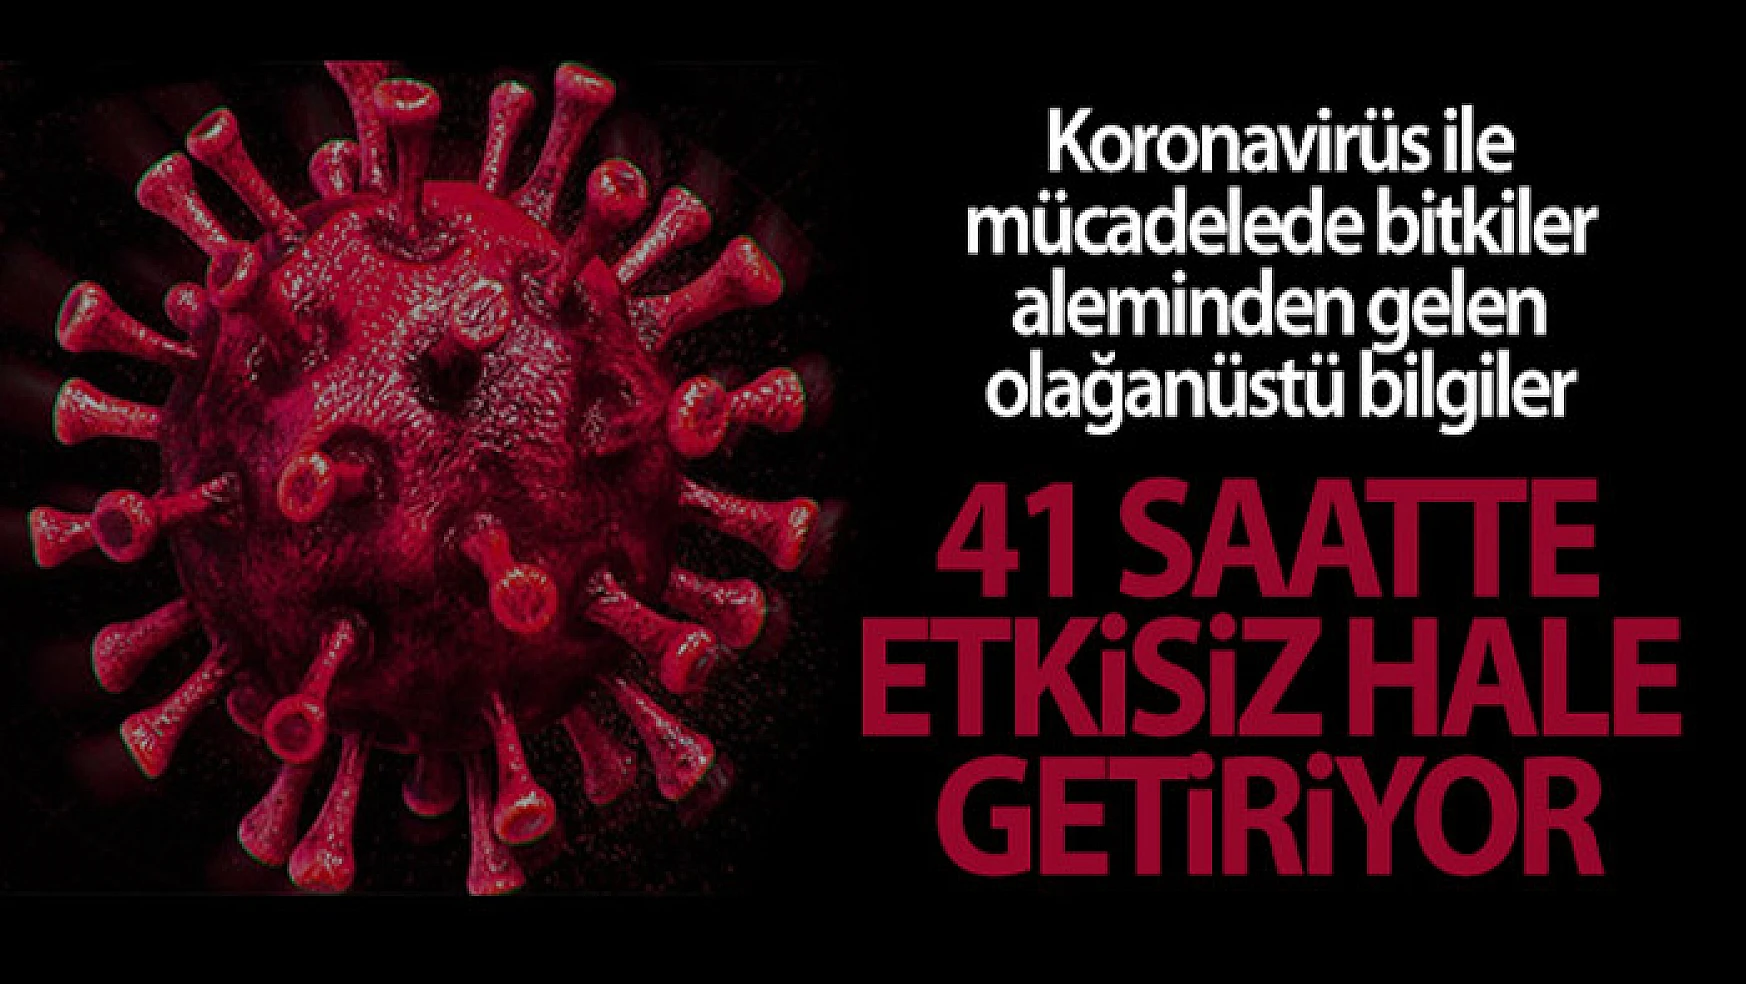 Korana virüsüne karşı kritik çözüm: 41 saatte etkisiz hale getiriyor